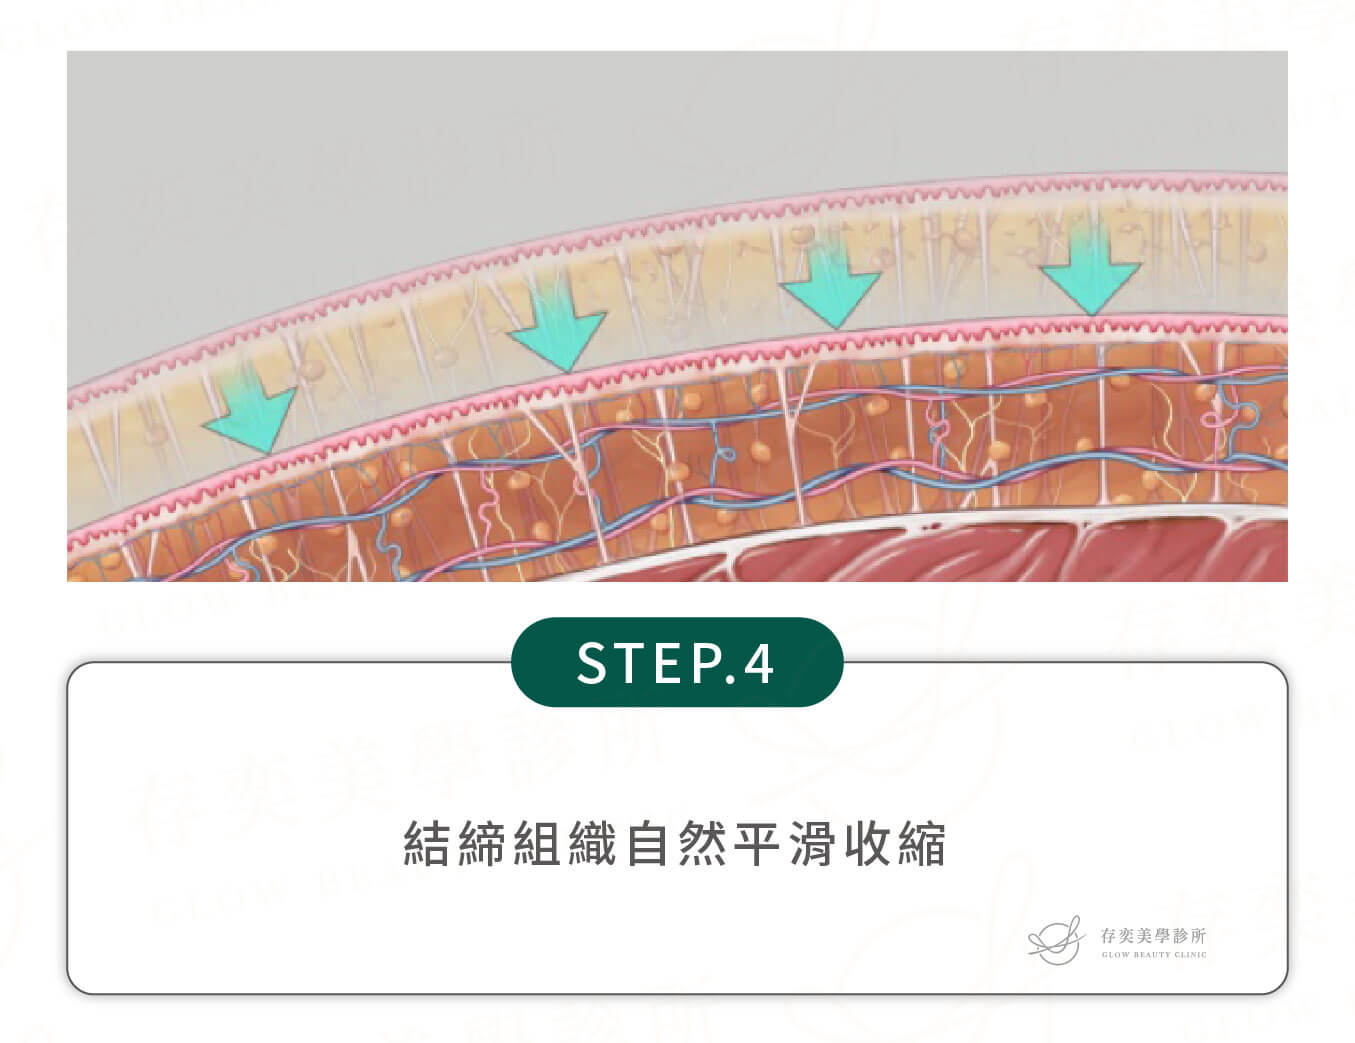 威塑抽脂手術除脂步驟_結締組織自然平滑收縮